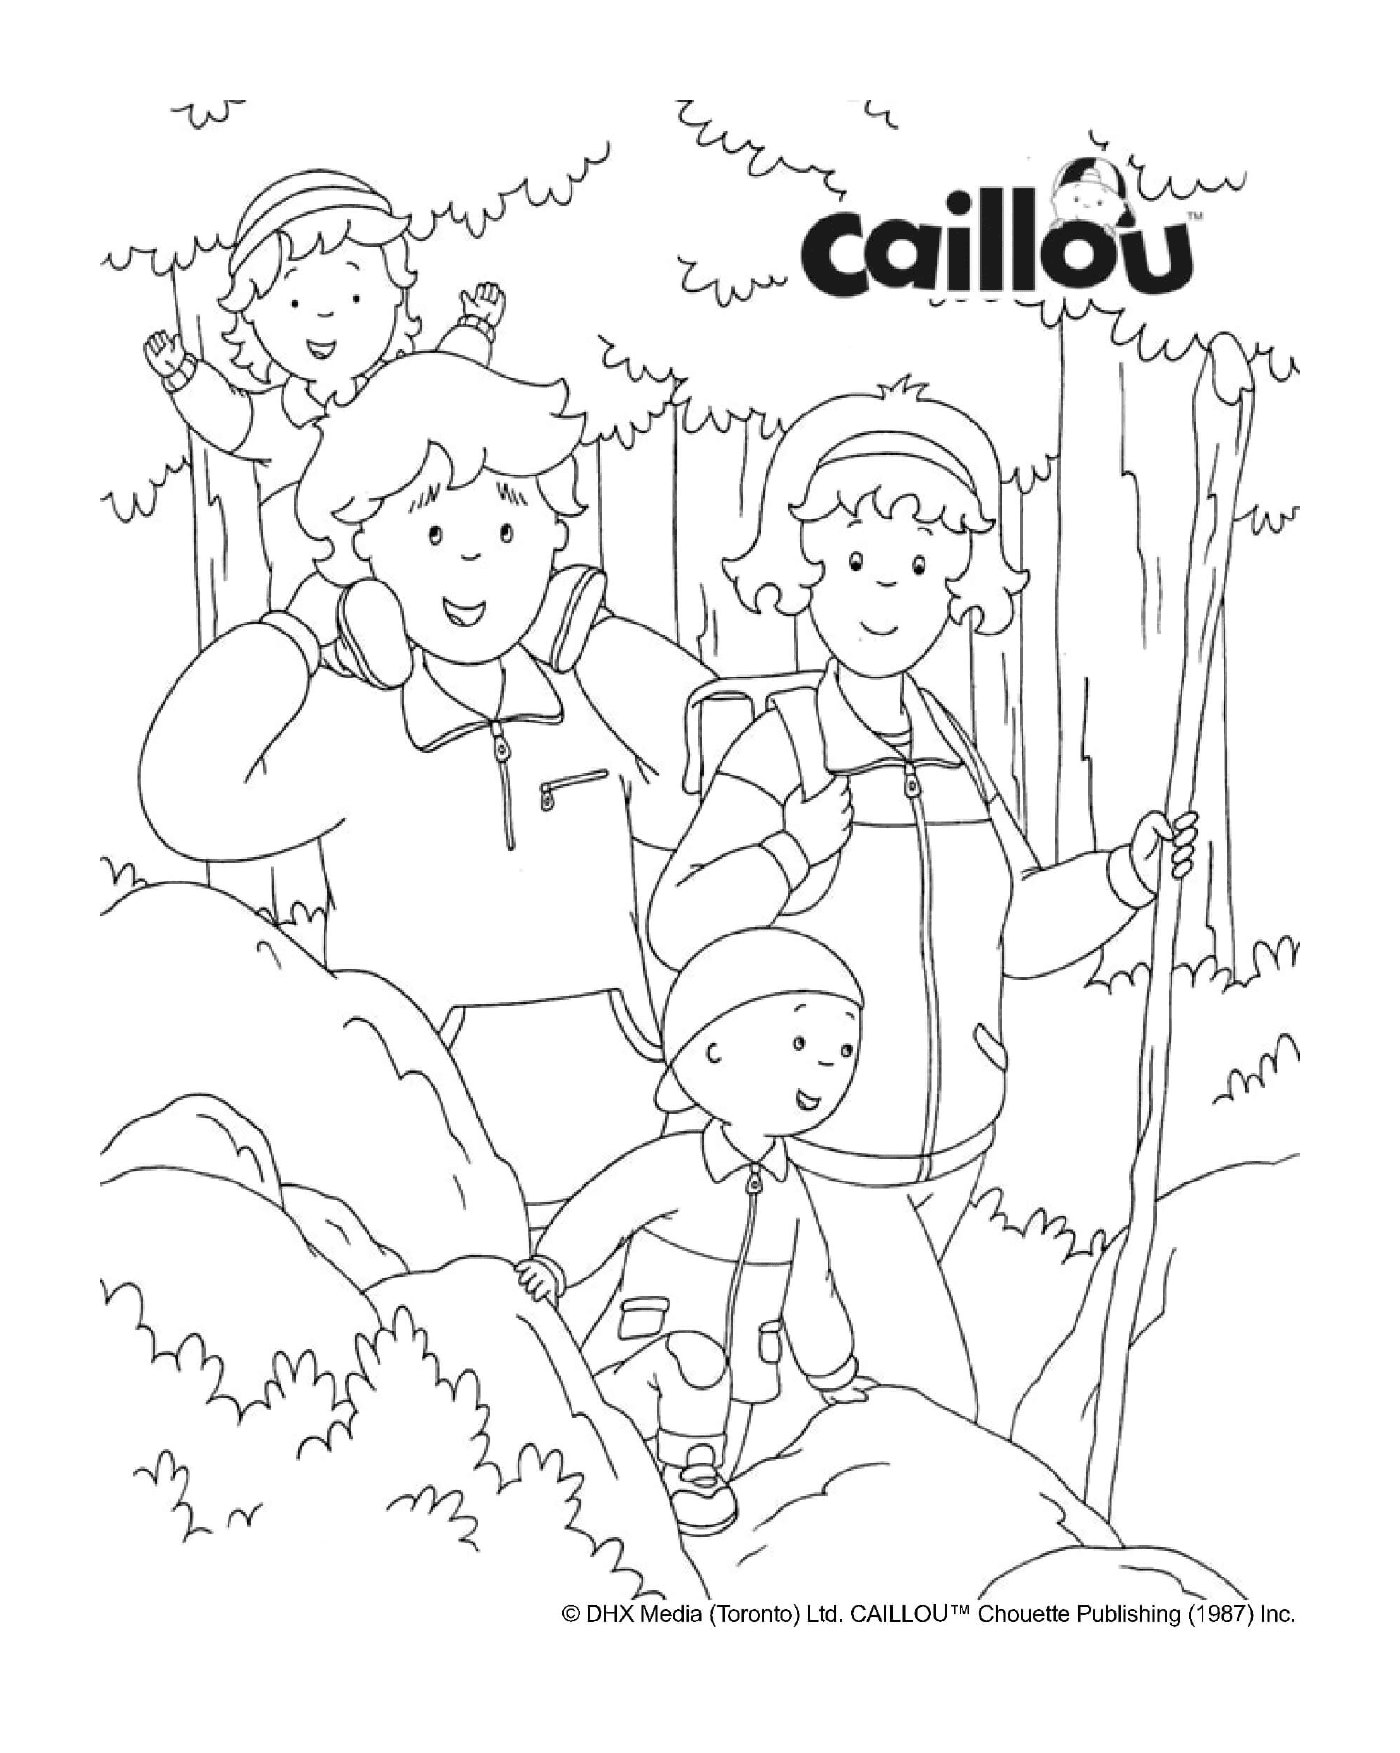   Une randonnée automnale en famille avec Caillou 